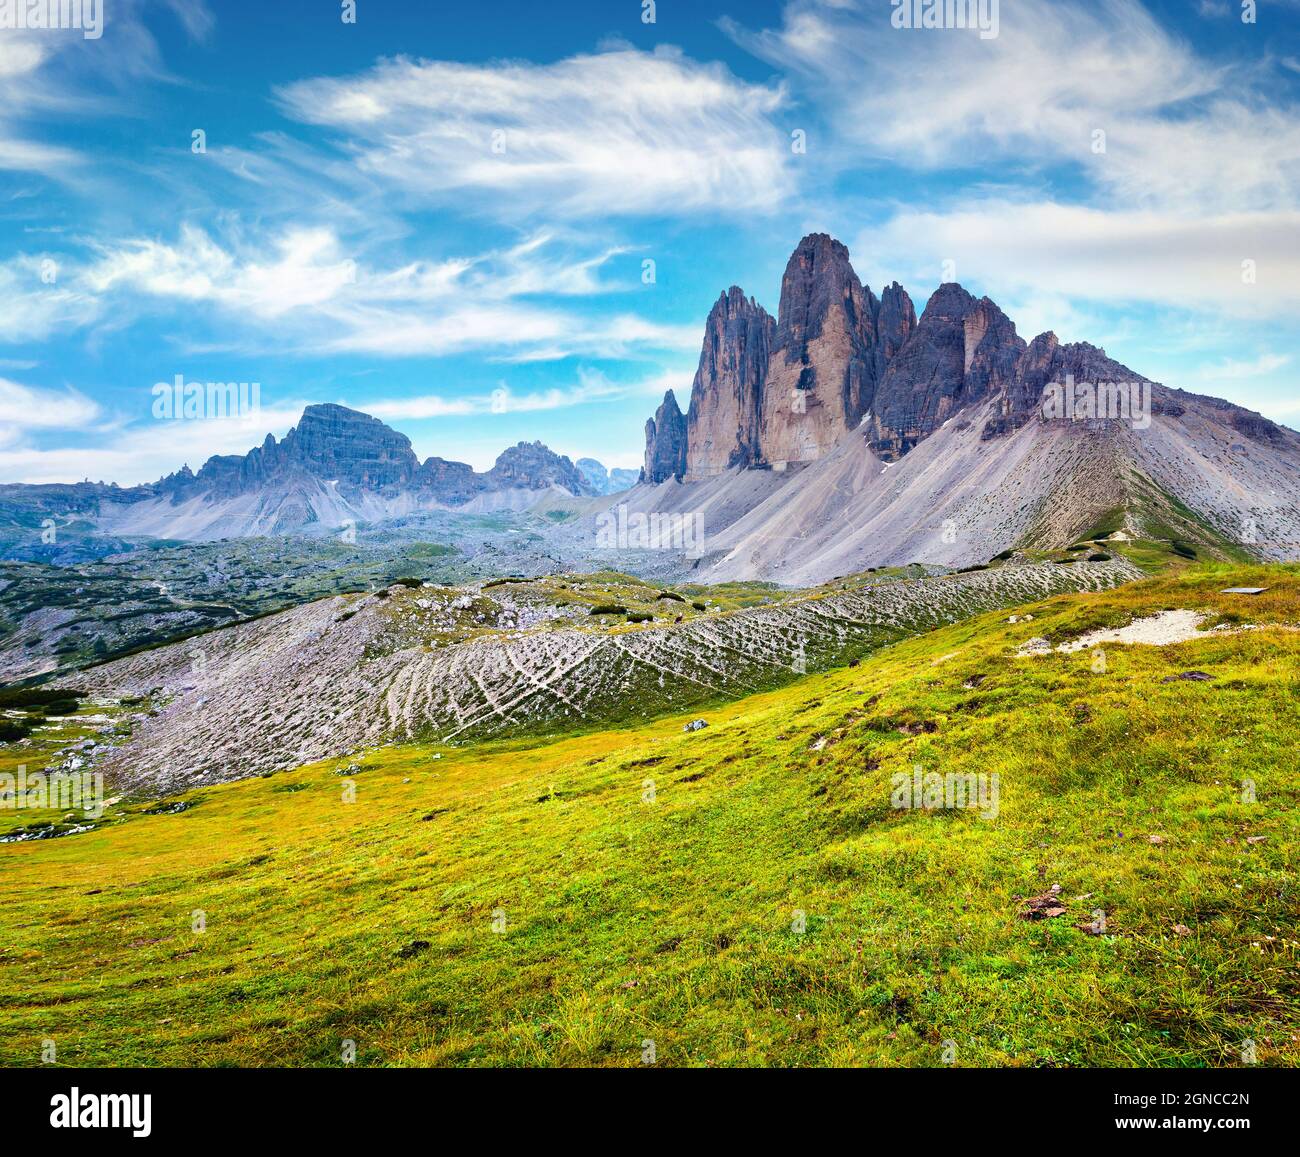 Fantastische Aussicht auf die Berggipfel in den Itaian Alpen im Sommer. Malerische Morgenszene im Nationalpark Tre Cime Di Lavaredo, Dolomiten, Italien, Euro Stockfoto